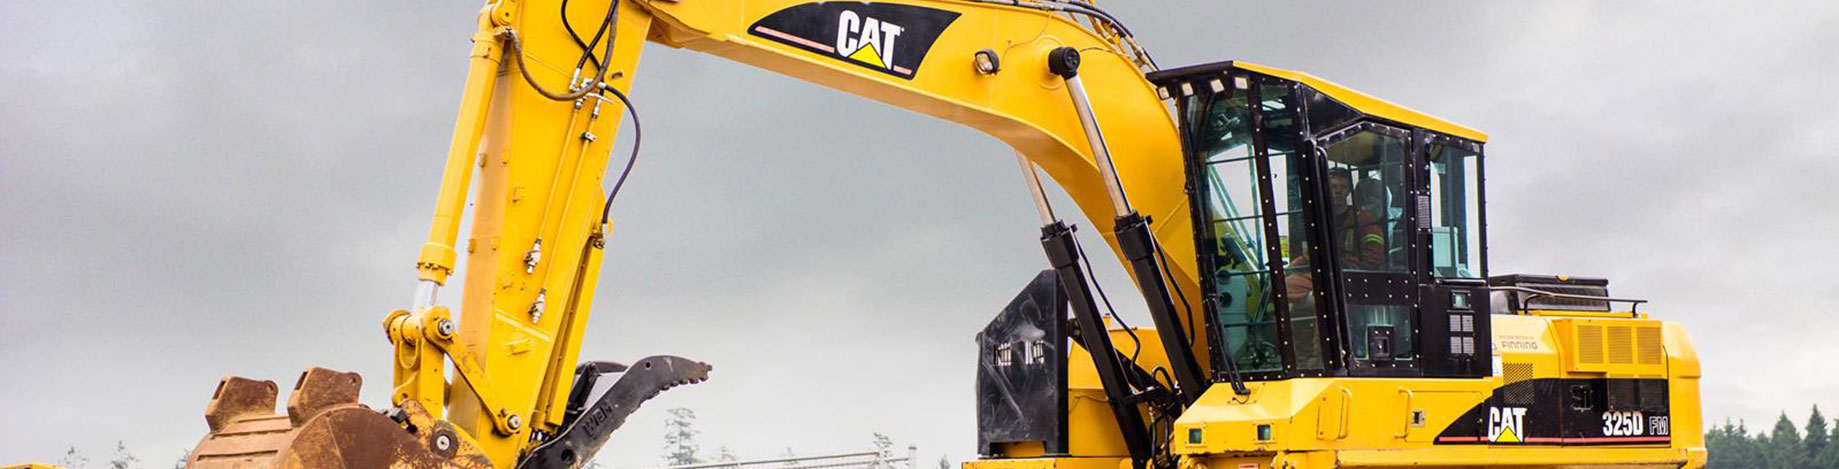 Used Caterpillar Excavator Parts | Used Cat Excavator Parts